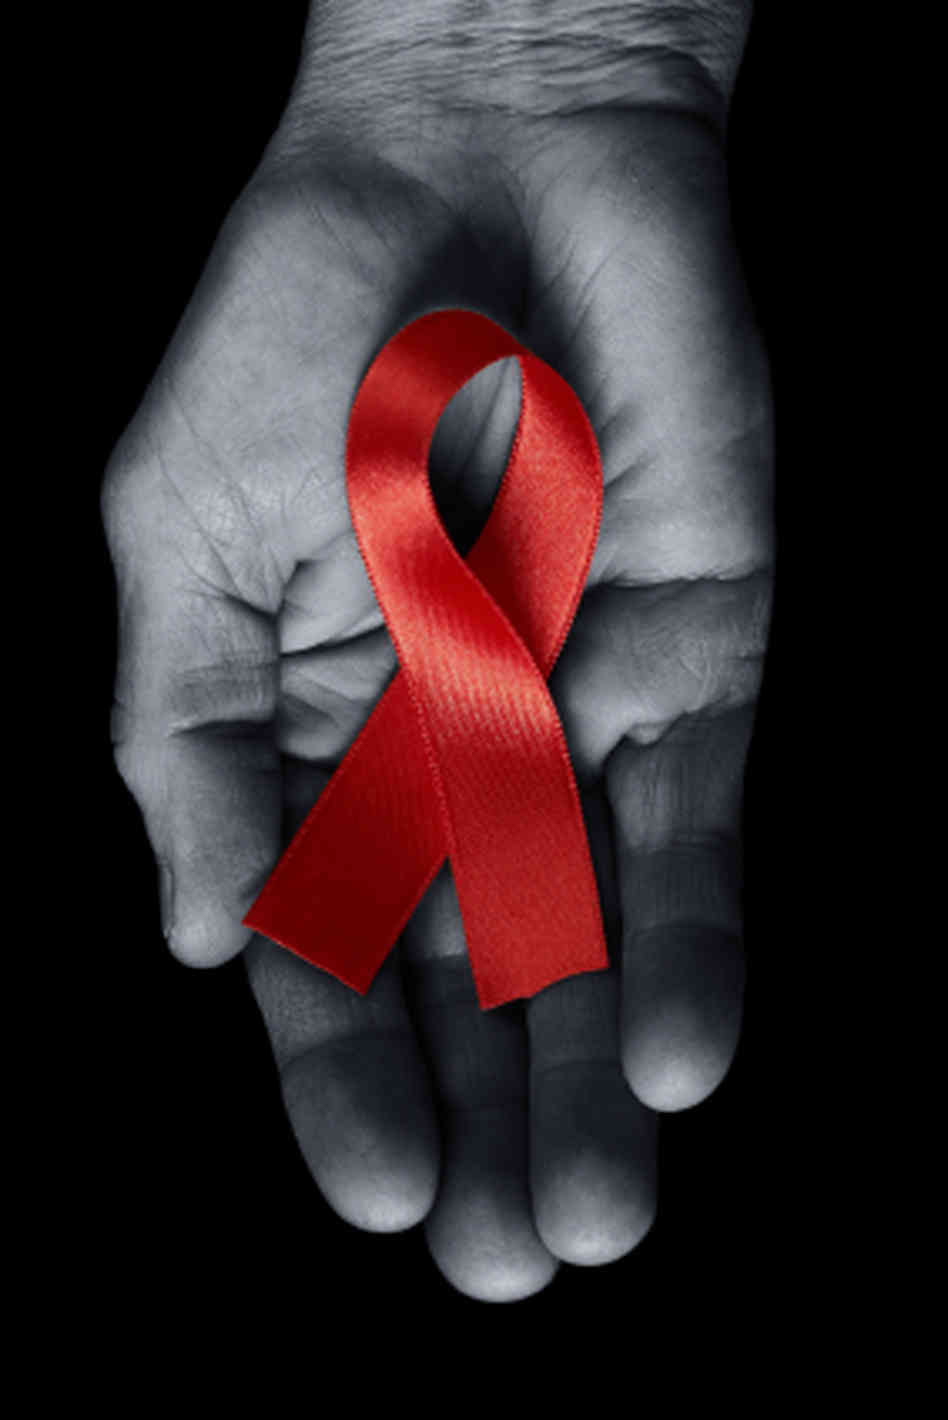 JAKIM MALAYSIA: JANGAN ASINGKAN MUSLIM YANG TERTULAR AIDS